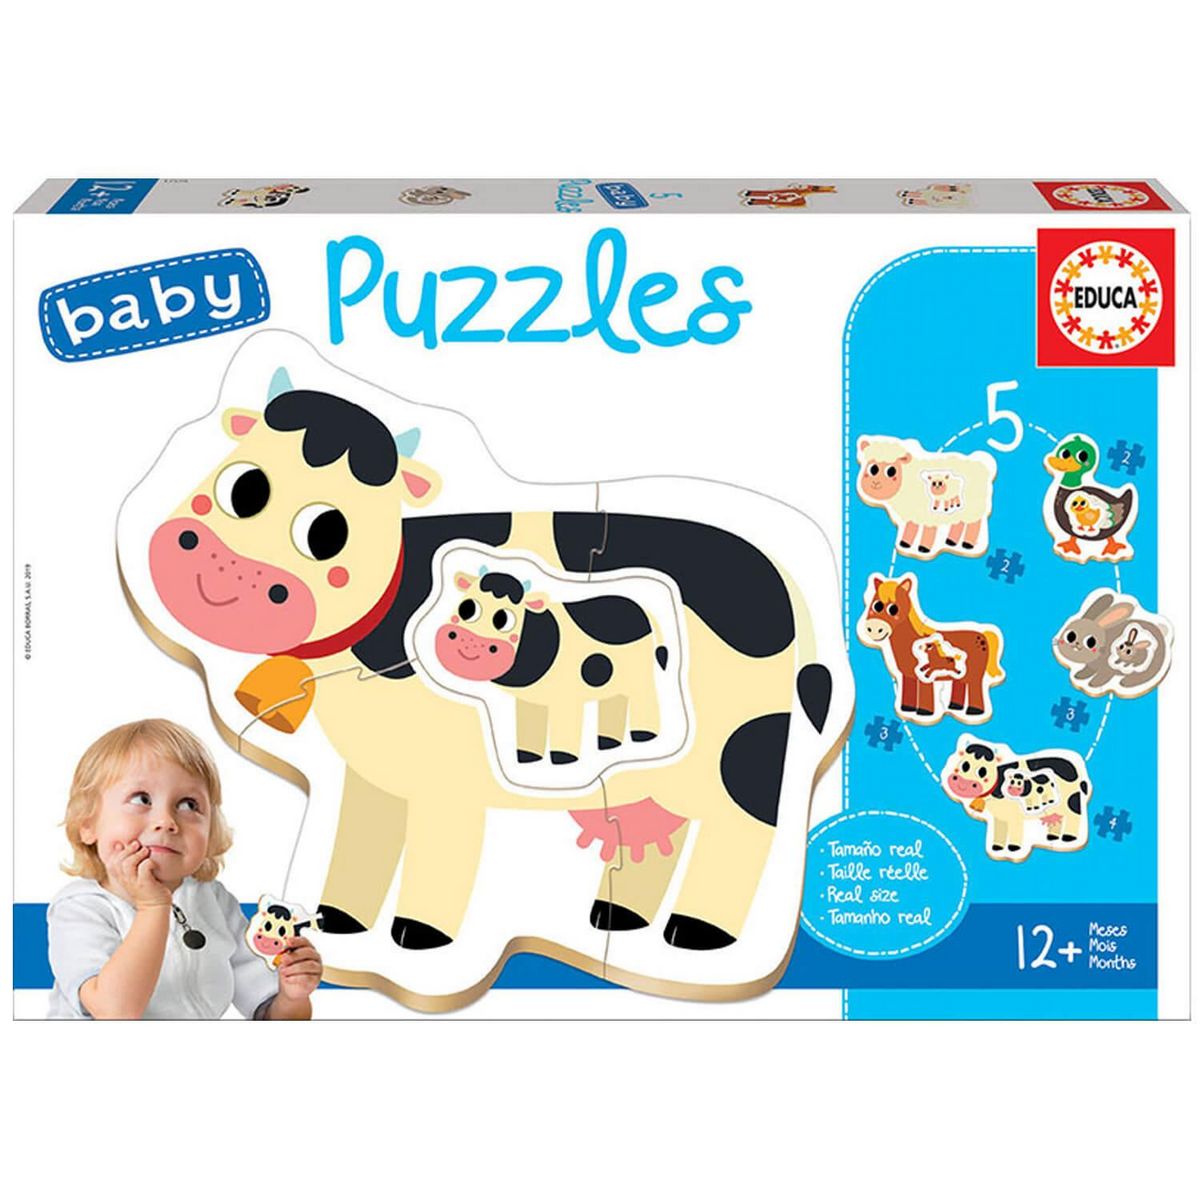 Baby puzzle : 5 puzzles de 2 à 4 pièces : La ferme - 12/18 mois (74 à 81 cm)